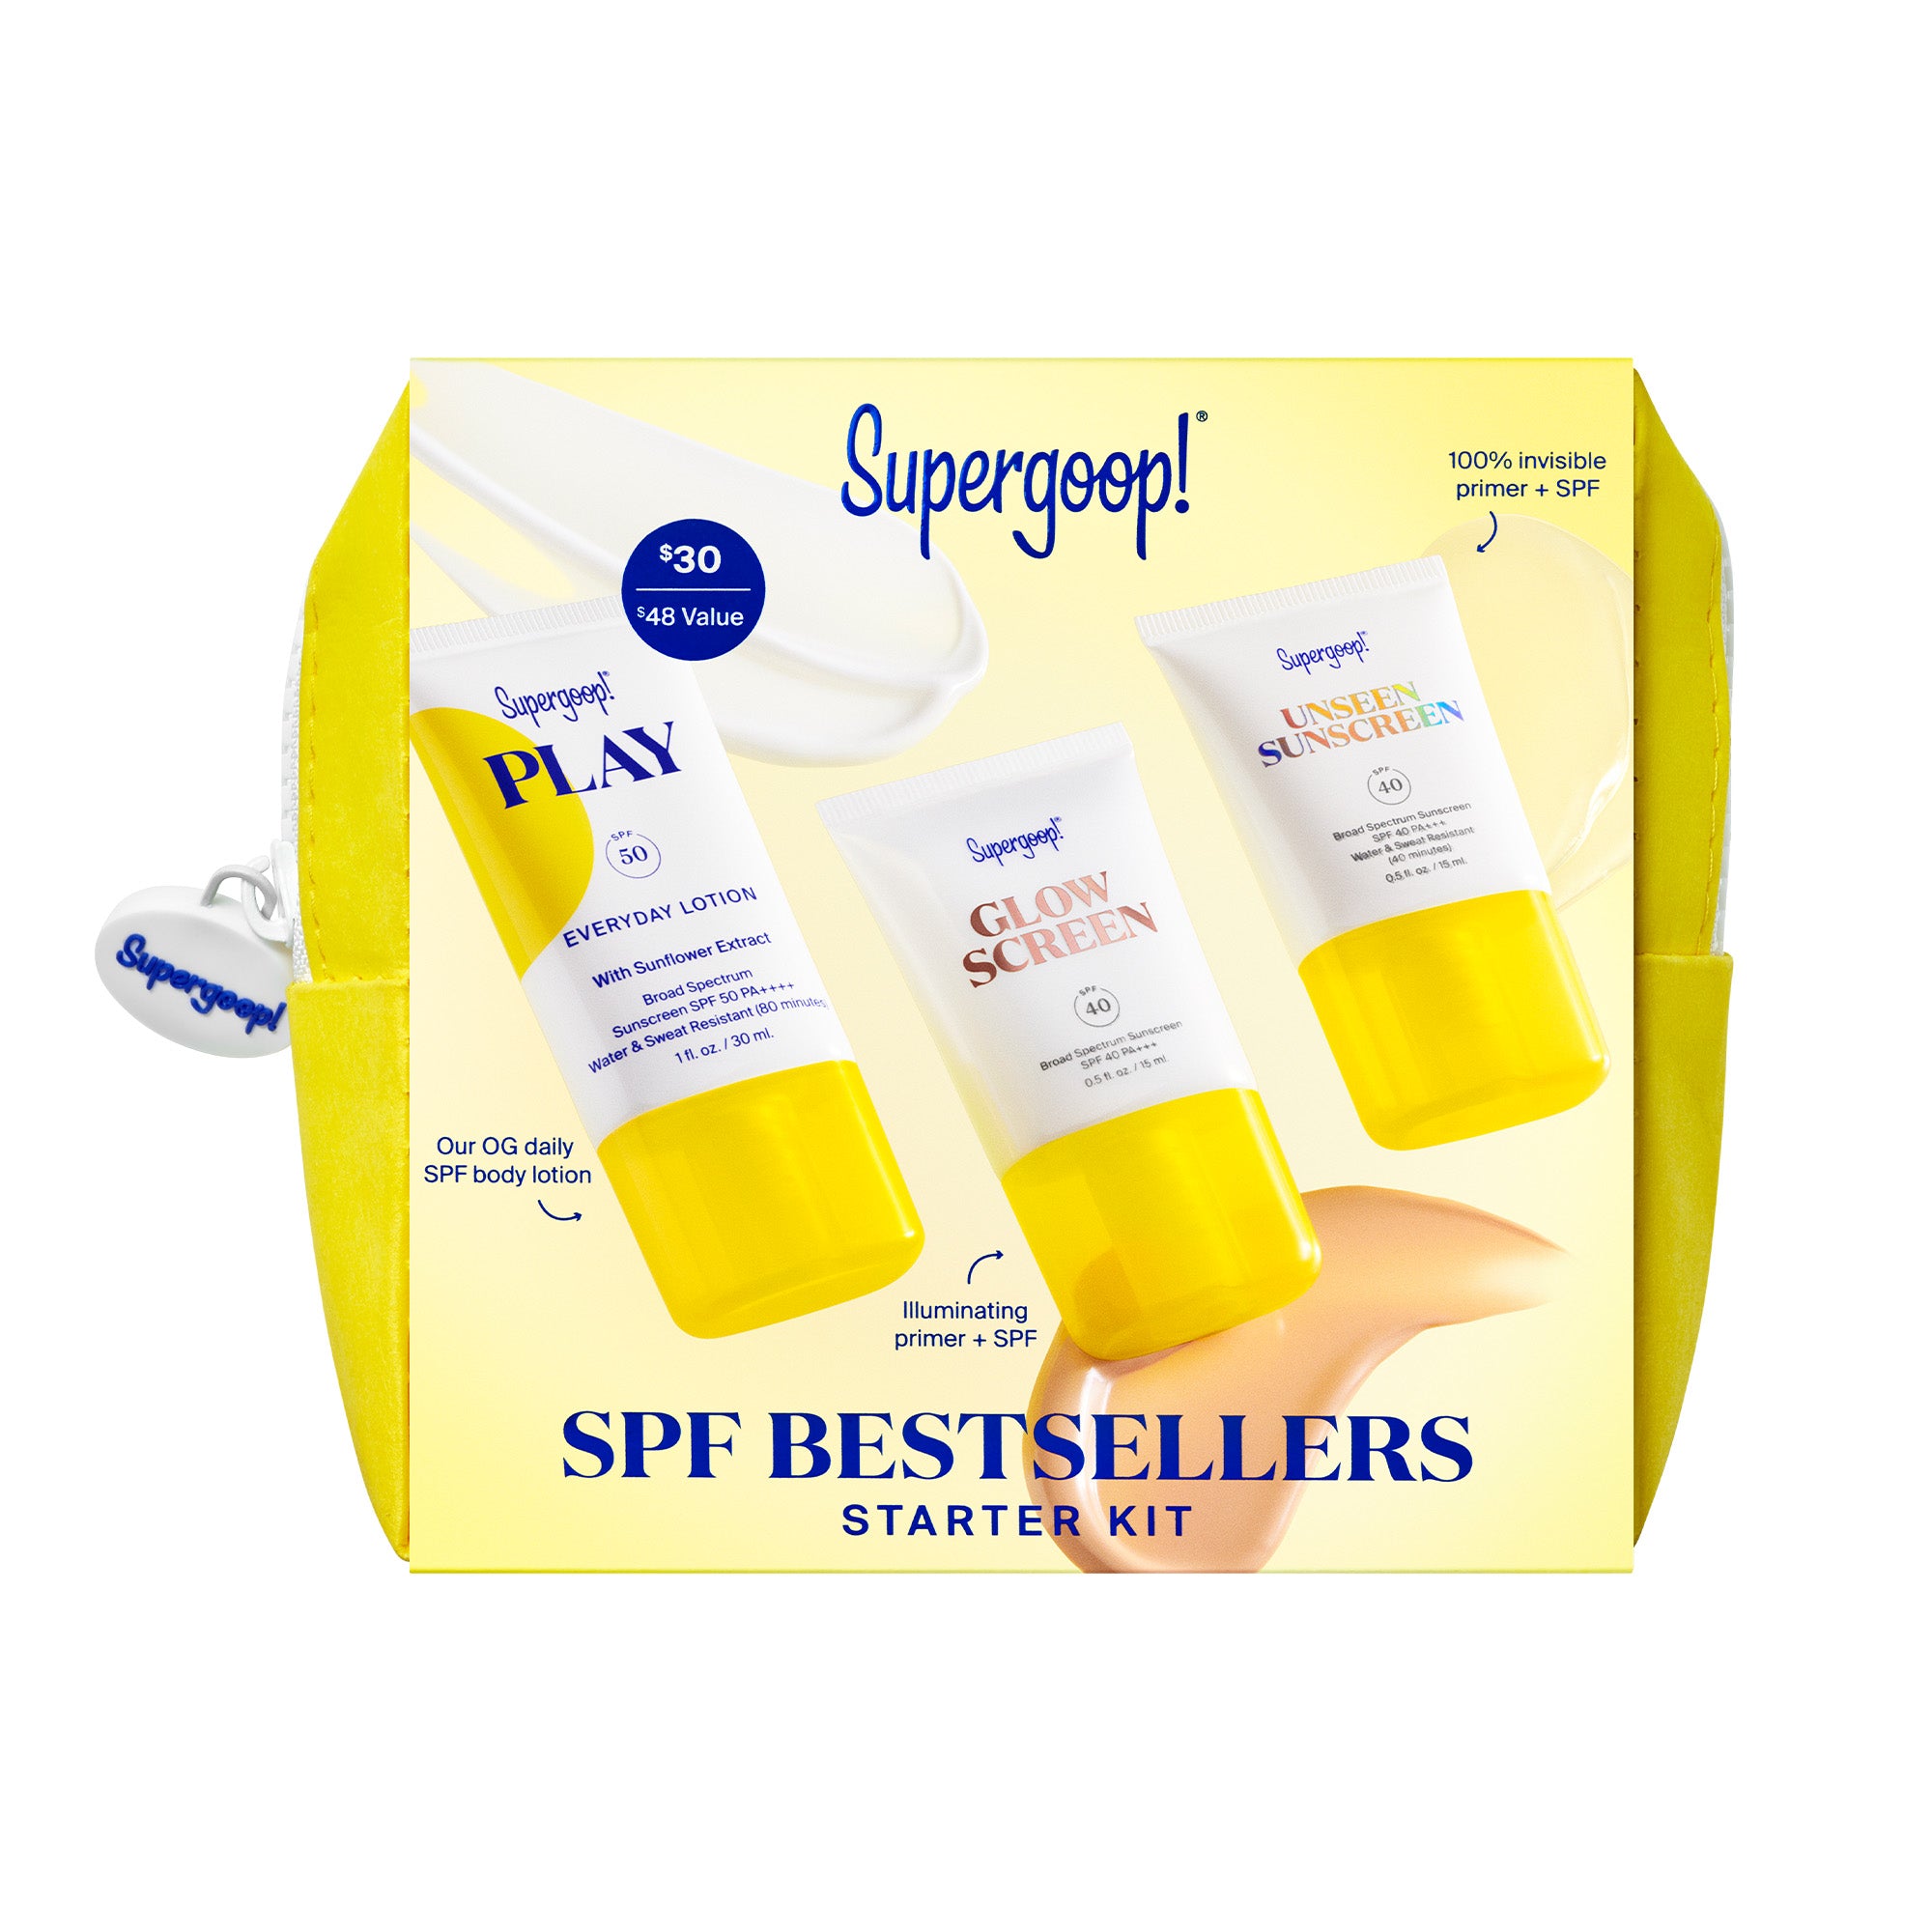 Supergoop SPF Bestsellers Starter Kit 2.0 ($48 Value) / KIT